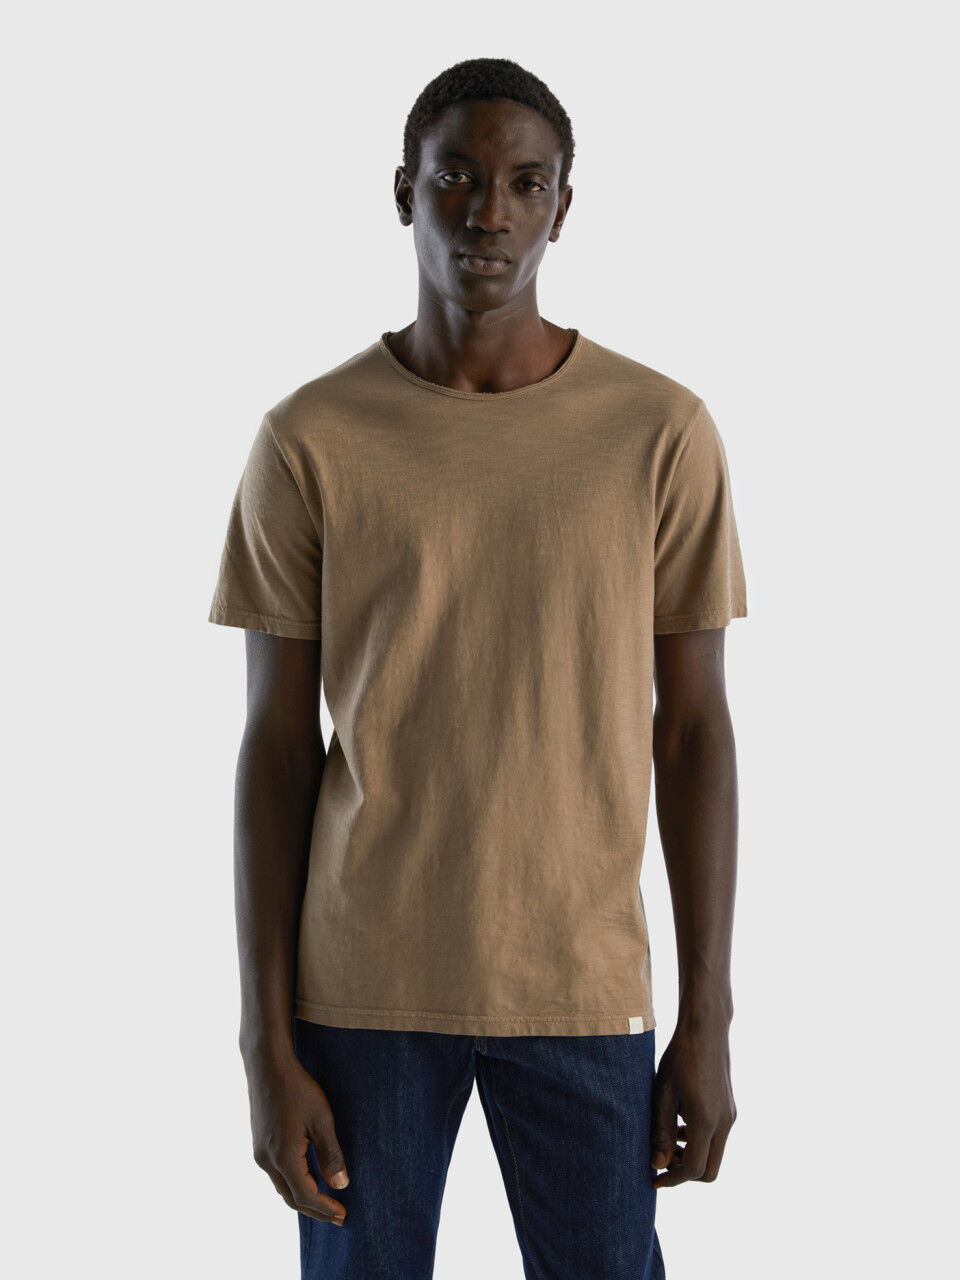 Dove gray t-shirt in slub cotton